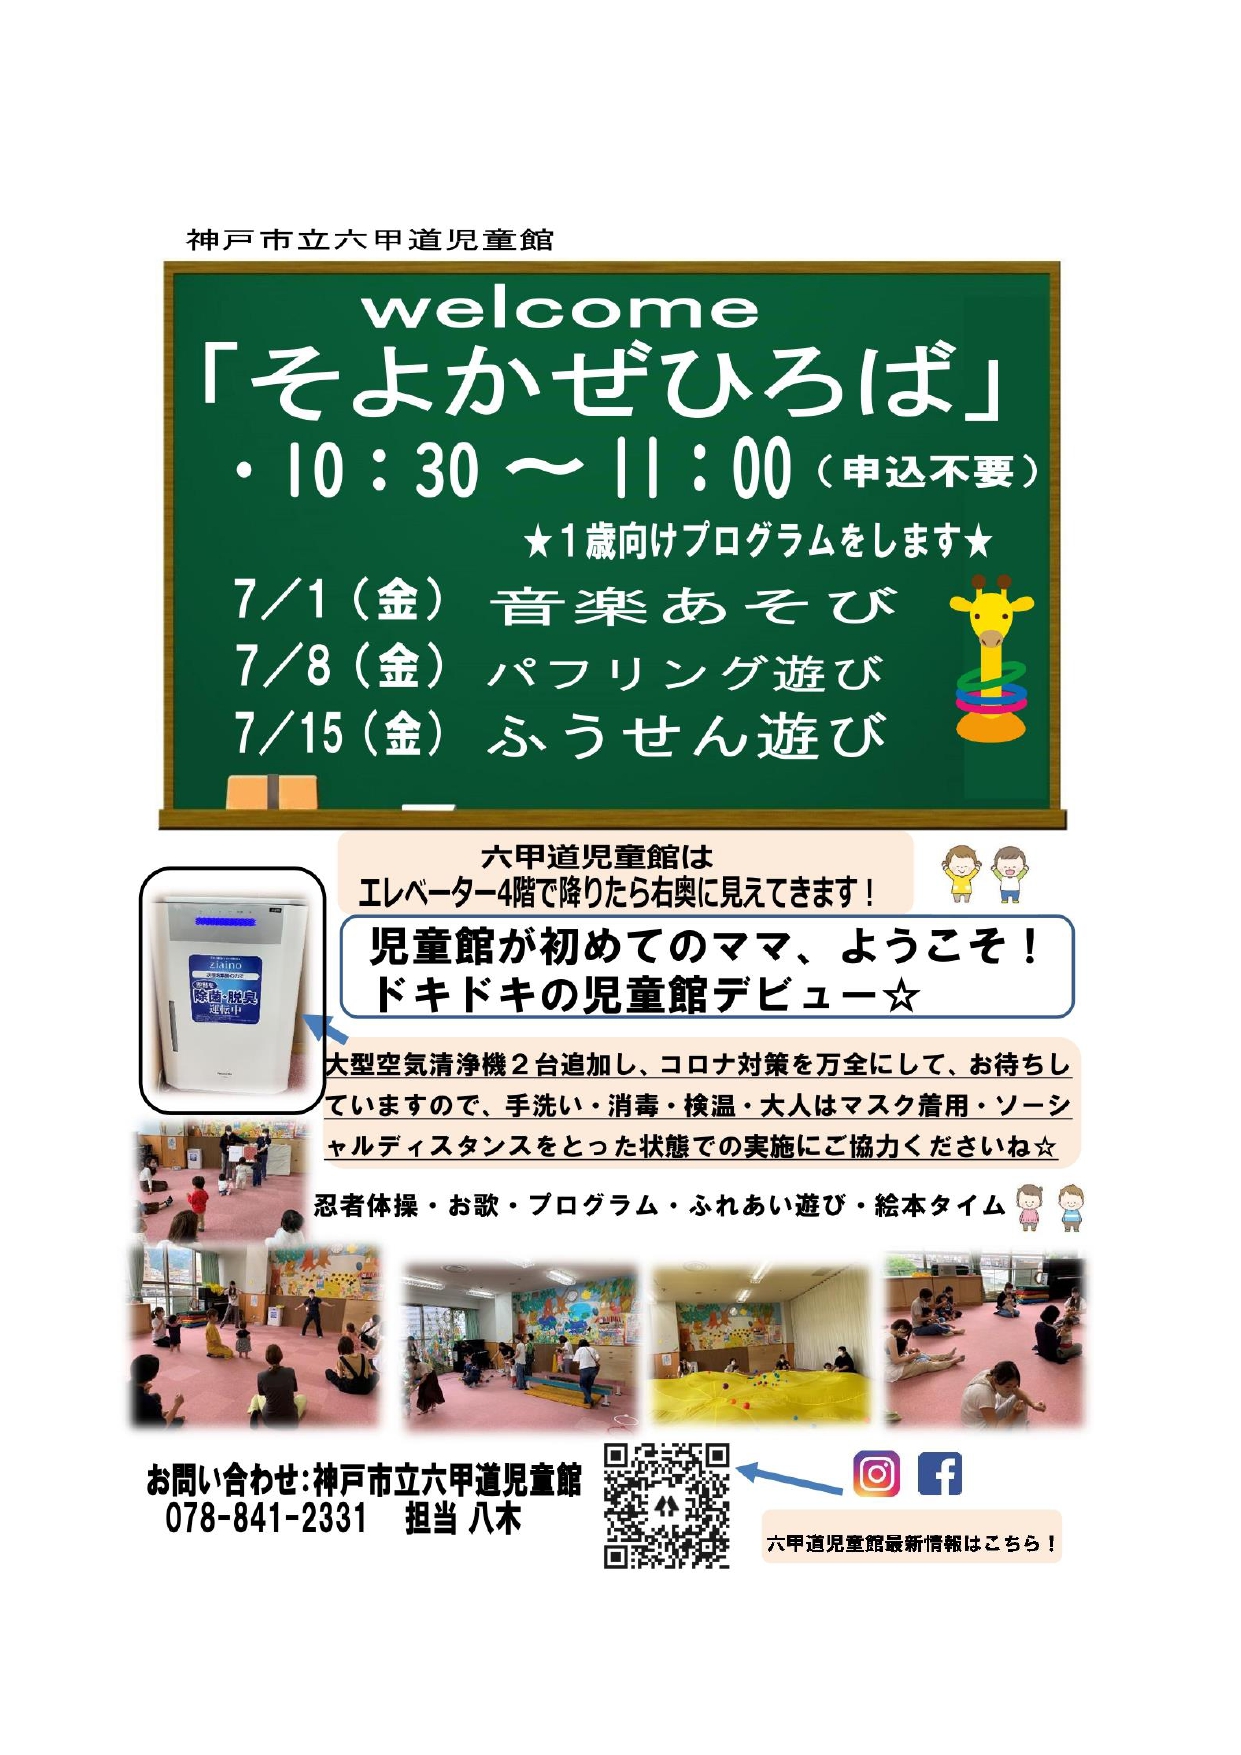 神戸市立六甲道児童館「そよかぜひろば」1歳児向けプログラム